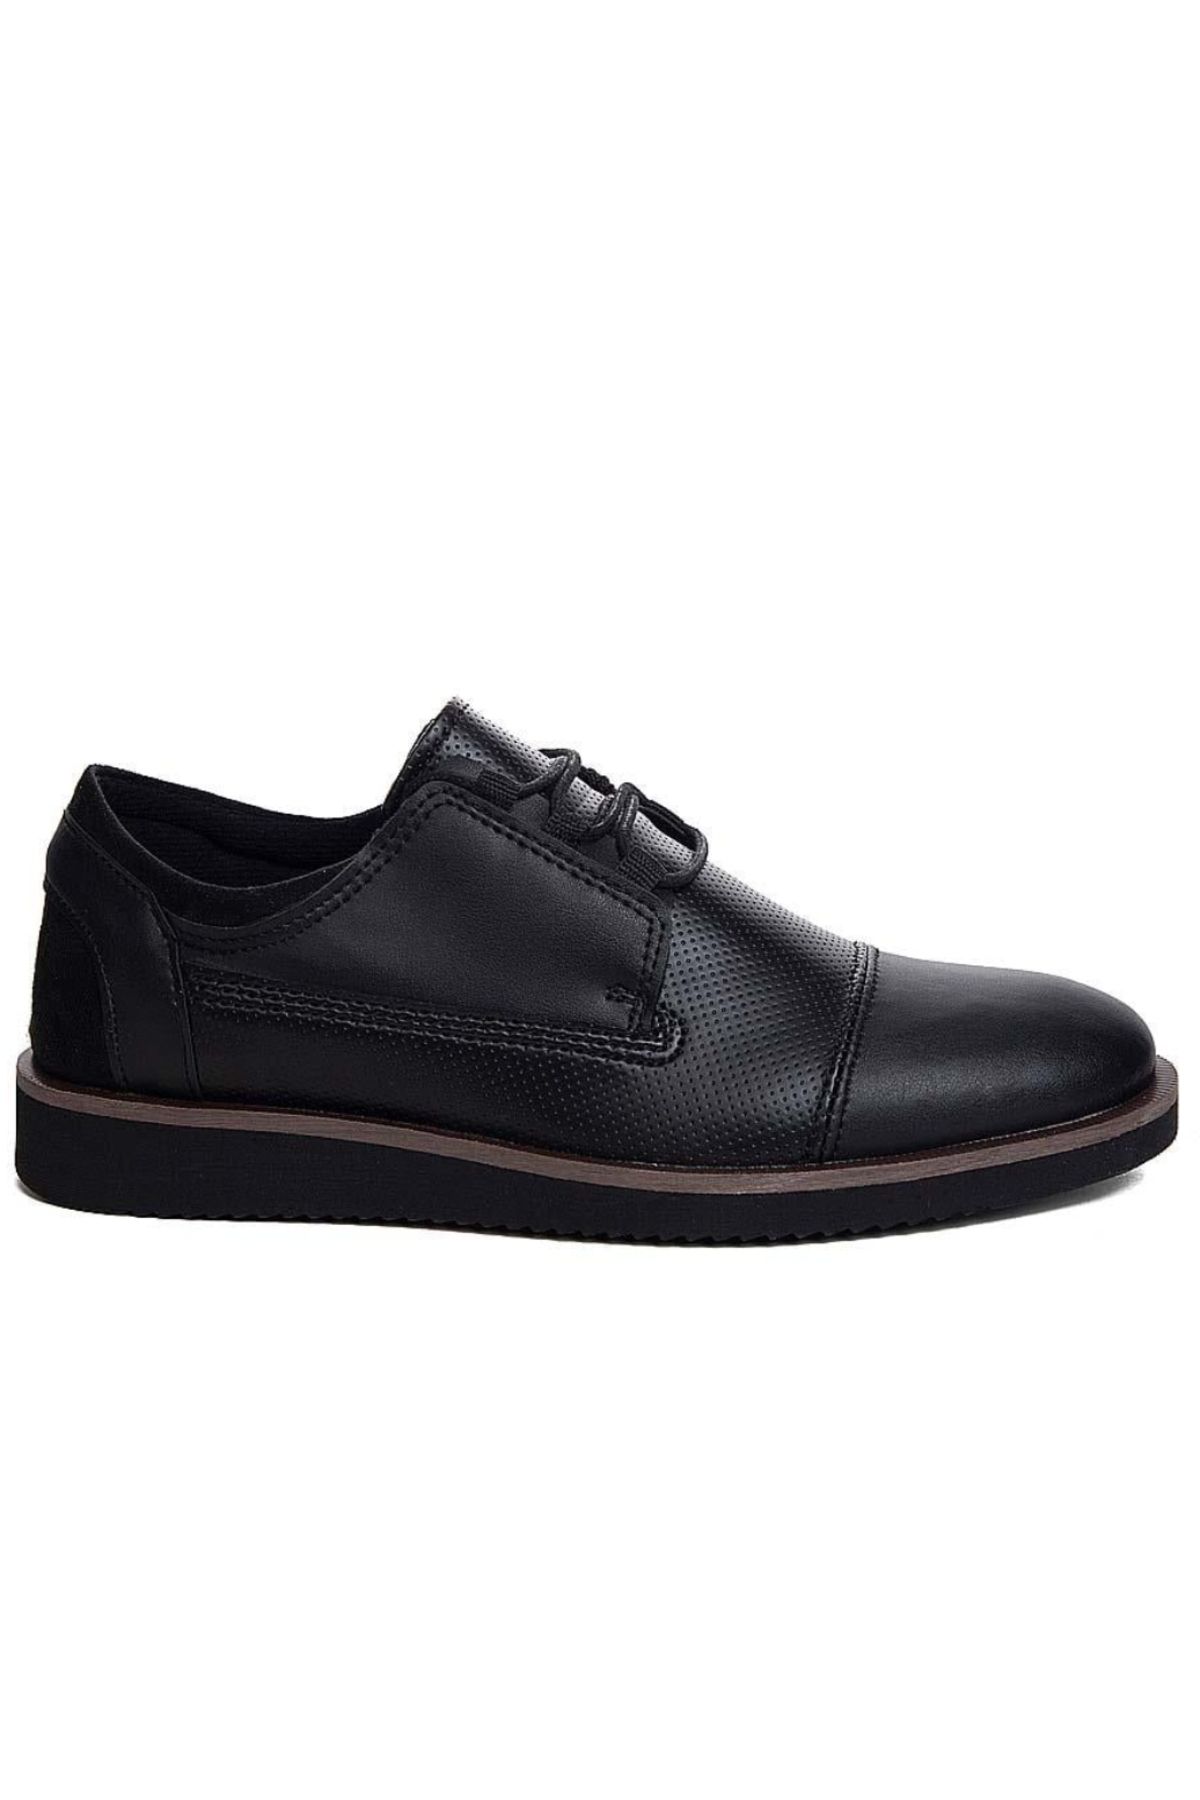 Conteyner 67110 Siyah Ortopedik Hafif Rahat Günlük Erkek Klasik Ayakkabı